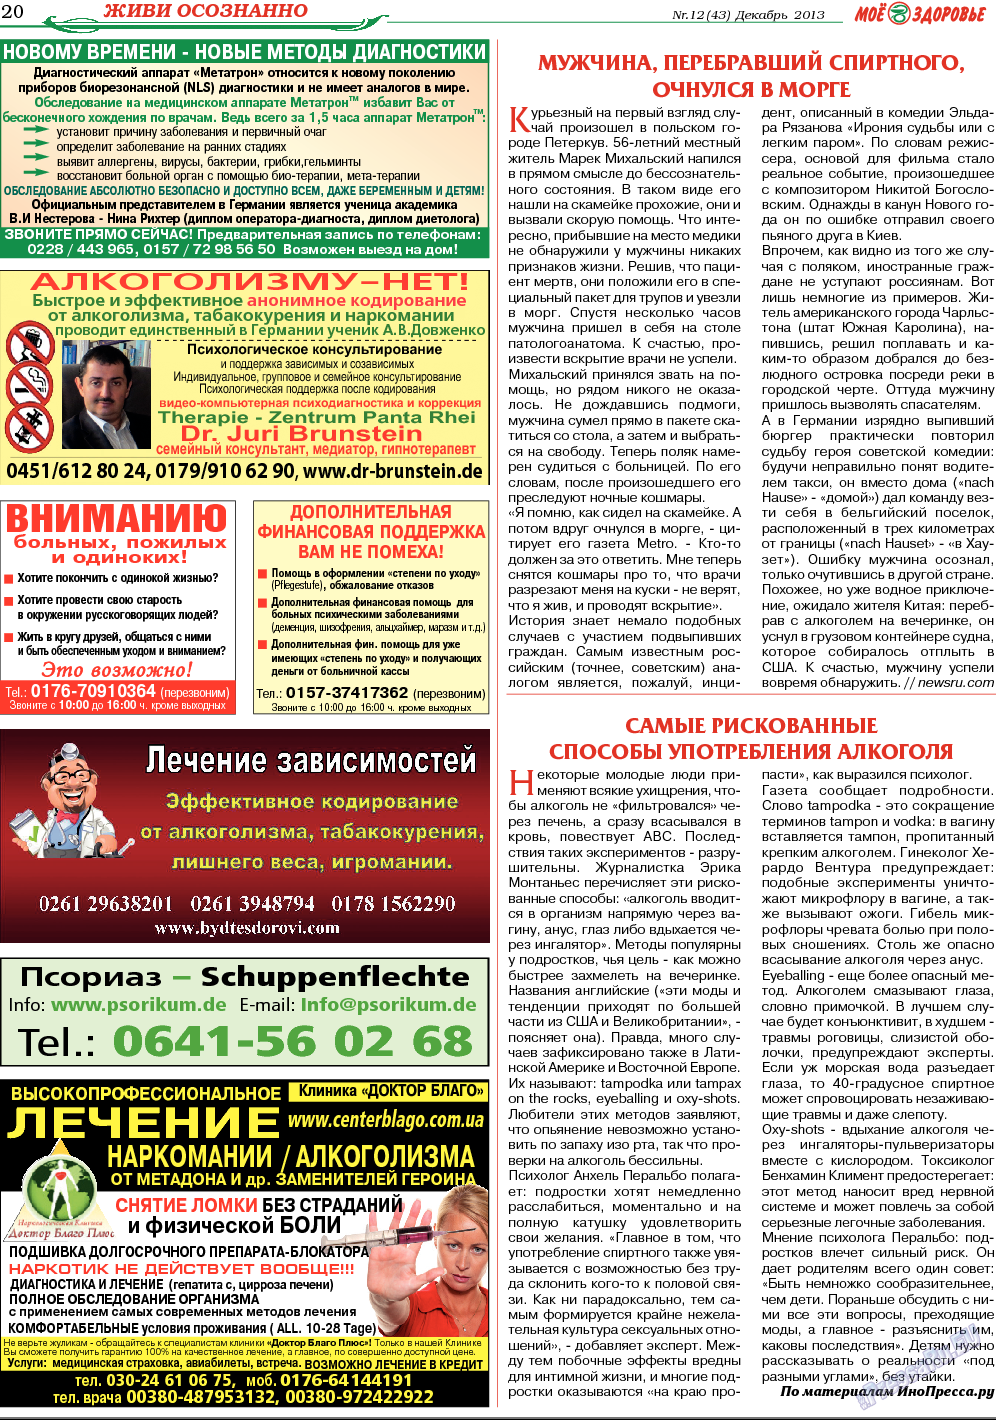 Кругозор (газета). 2013 год, номер 12, стр. 20